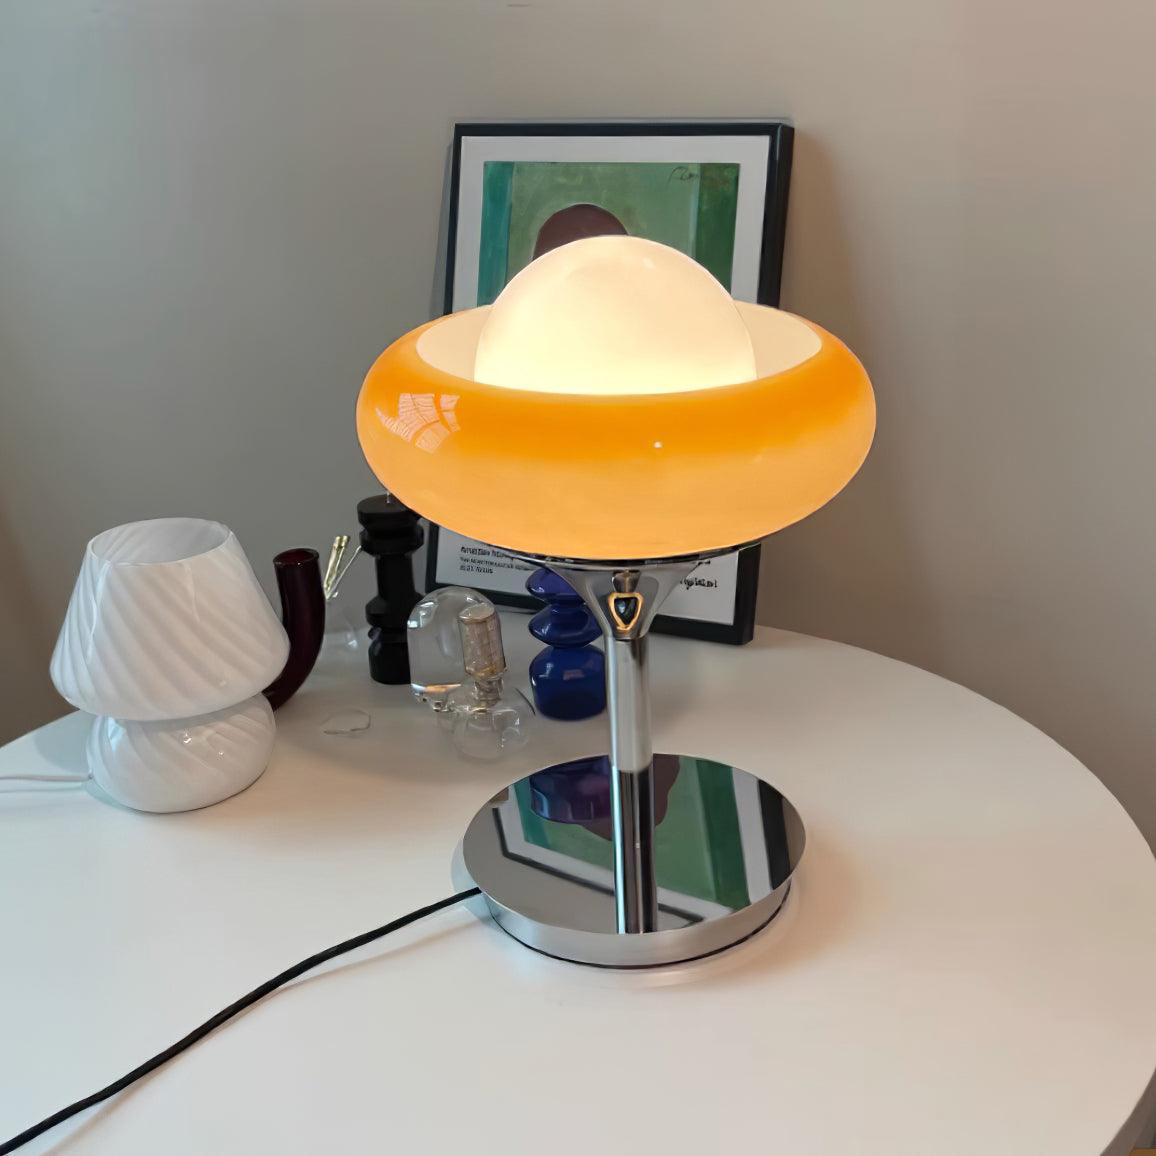 Guzzini Table Lamp 11″- 14.5″